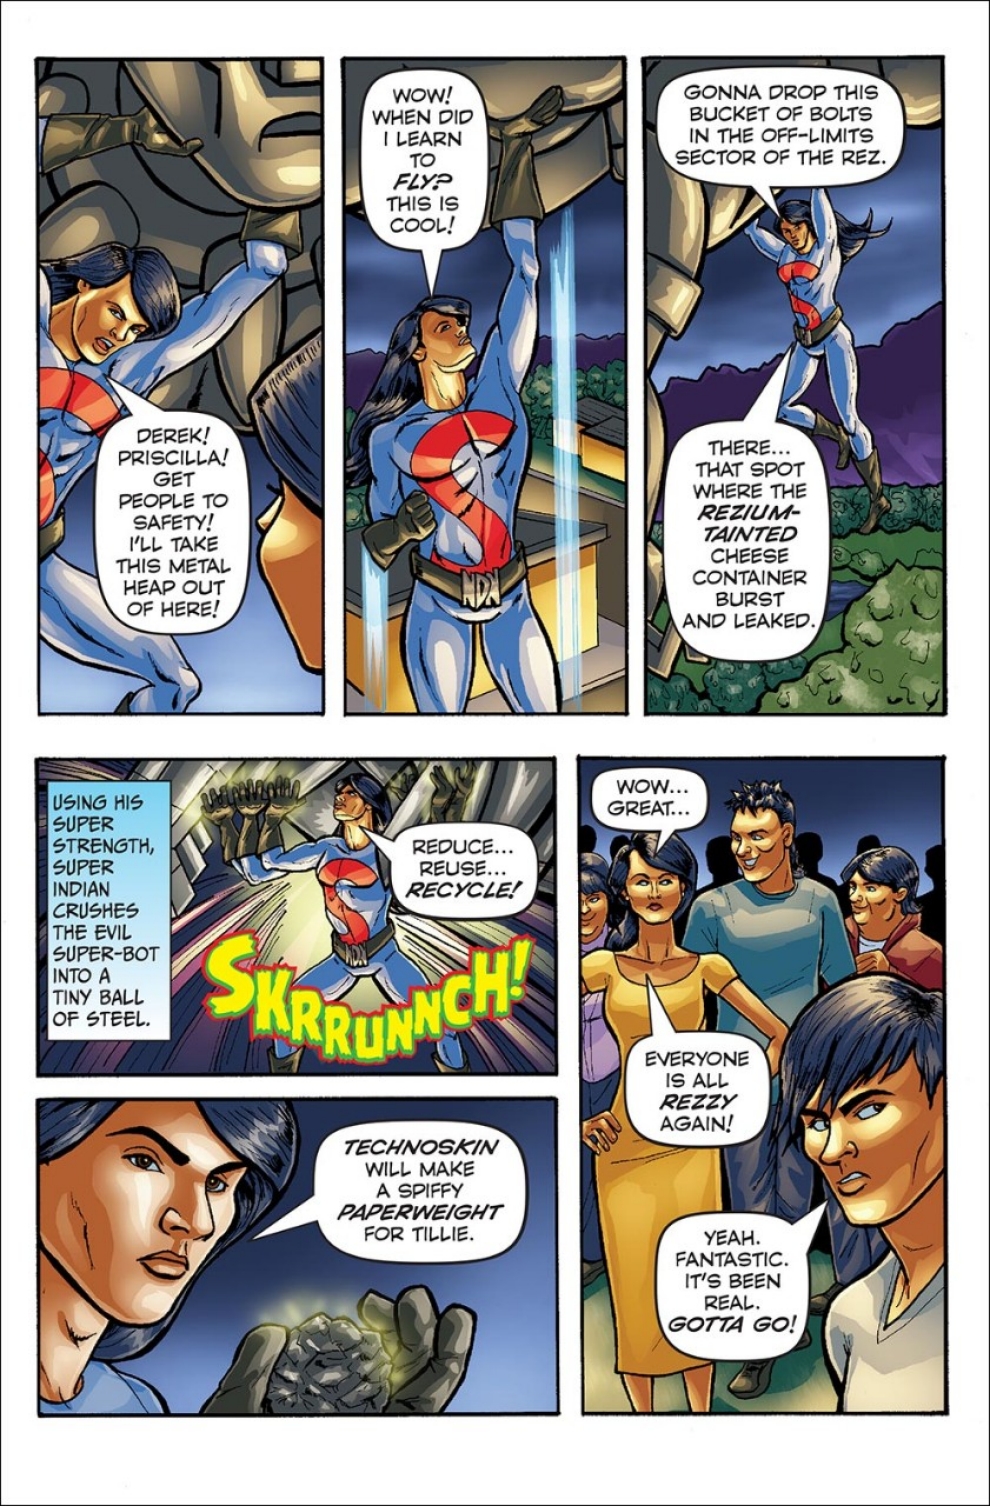 Arigon Starr, Super Indian, Native American comics